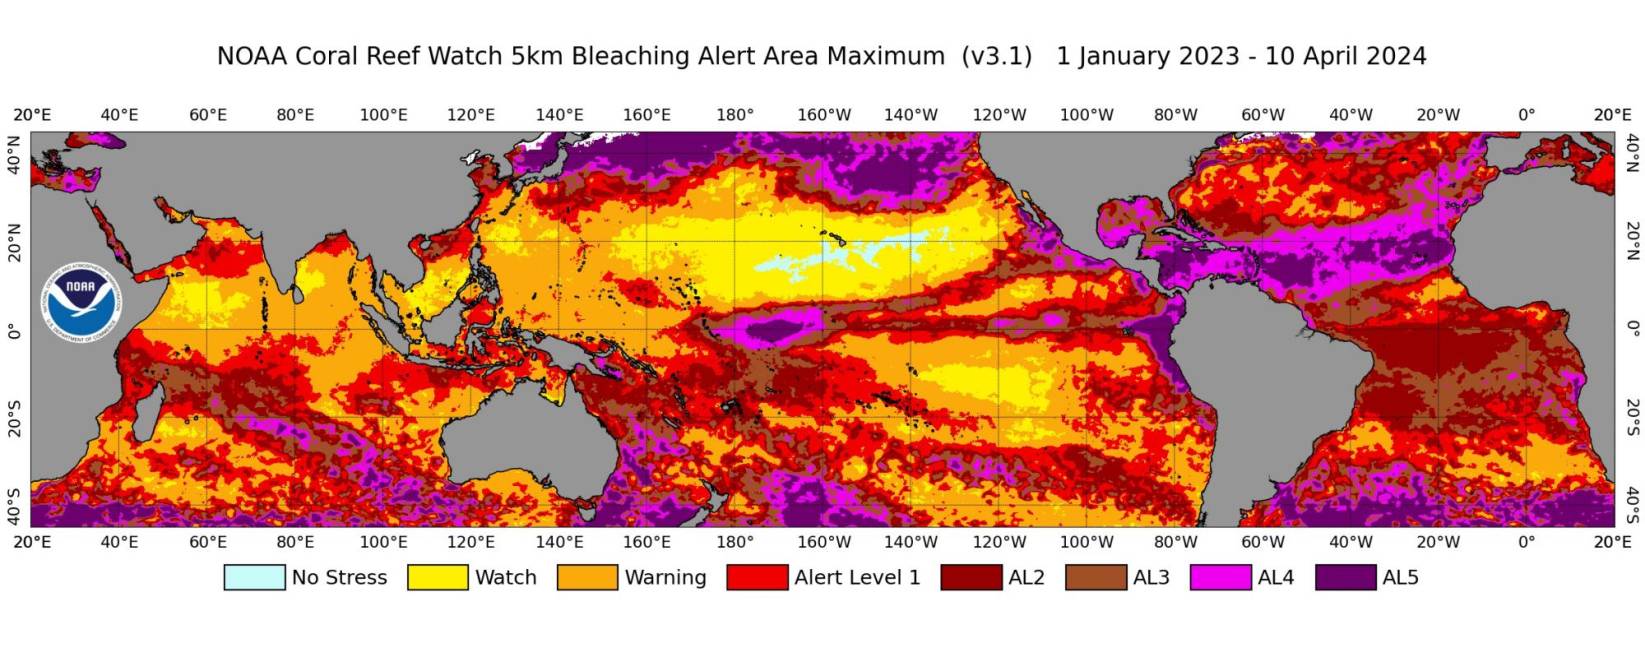 $!Mapa del área de alerta de blanqueo de coral satelital global con resolución de 5 km de NOAA Coral Reef Watch, del 1 de enero de 2023 al 10 de abril de 2024.